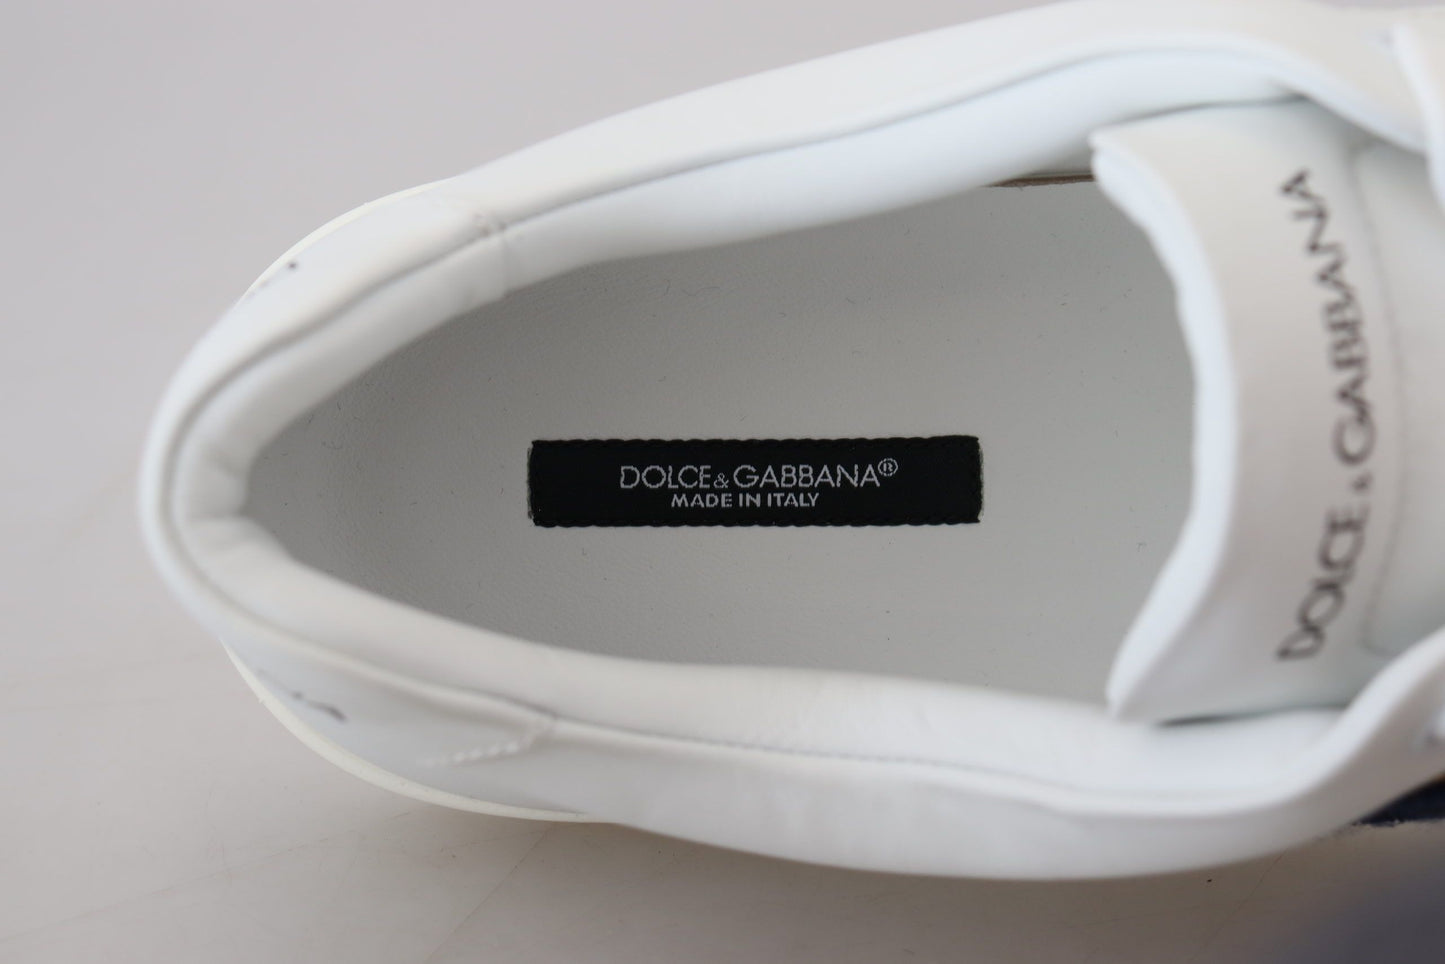 Dolce & Gabbana White in pelle bianca DG Logo Sneaker Casual Shoe